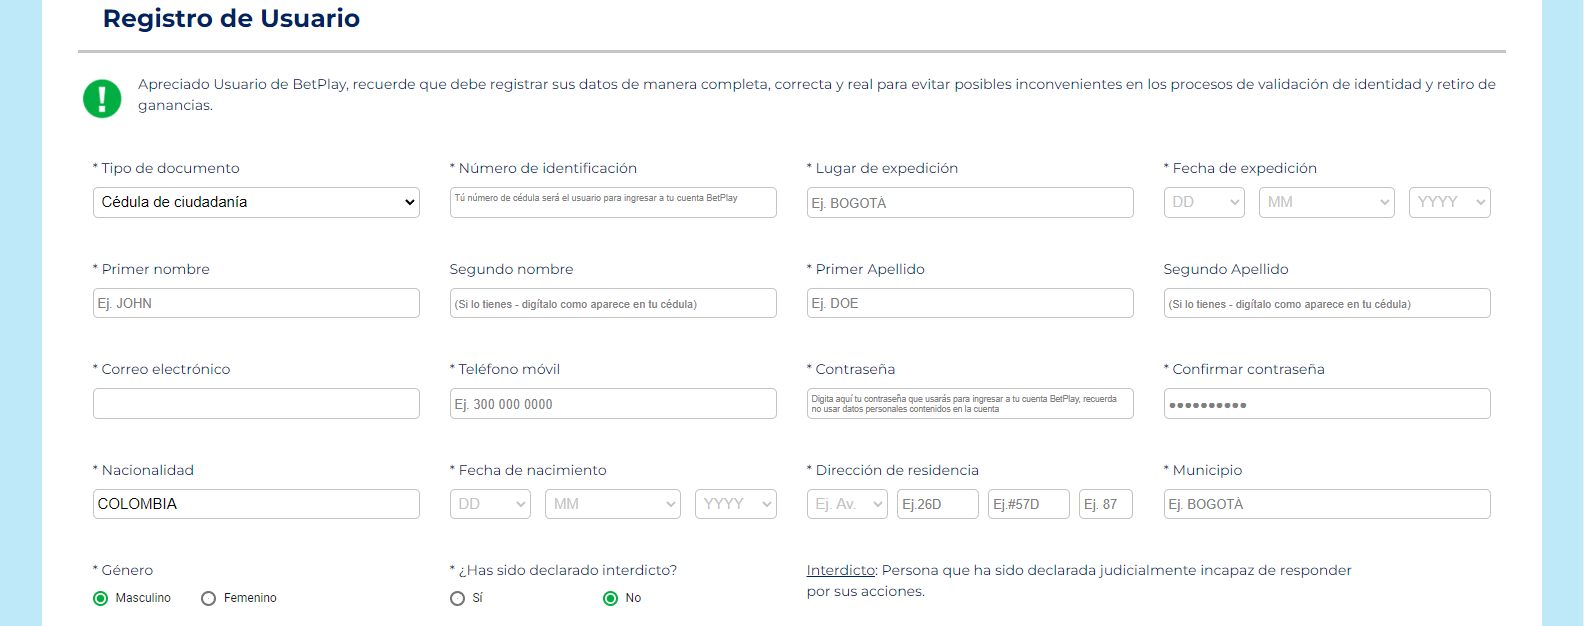 Muestra parte del formulario que deben rellenar los usuarios para registrarse en BetPlay